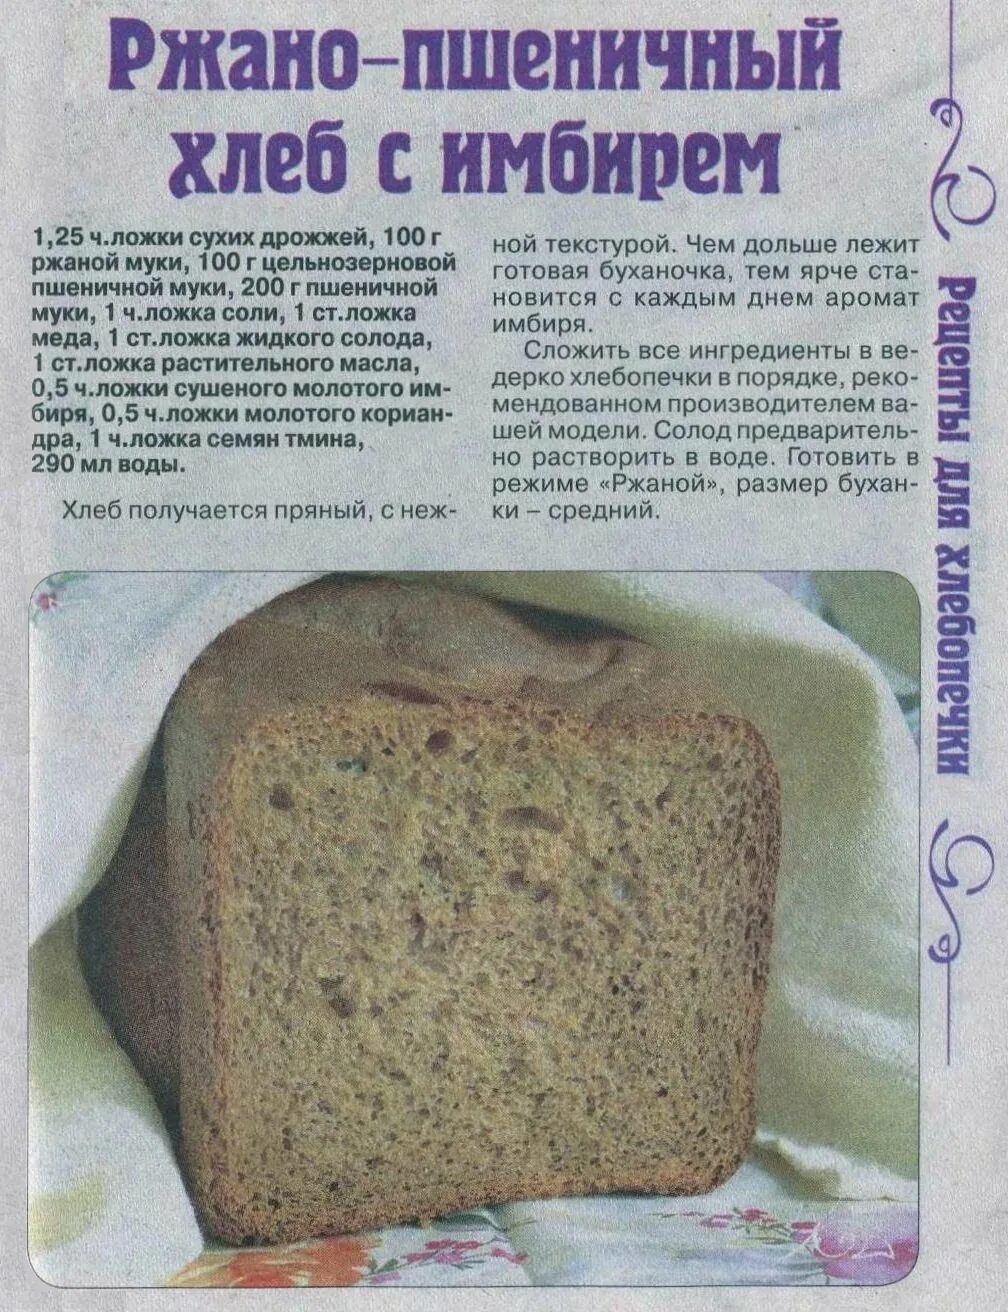 Рецепт хлеба в хлебопечке. Тесто на хлеб в хлебопечке. Домашний хлеб в хлебопечке. Рецептура ржаного хлеба. Приготовить в хлебопечке рецепты